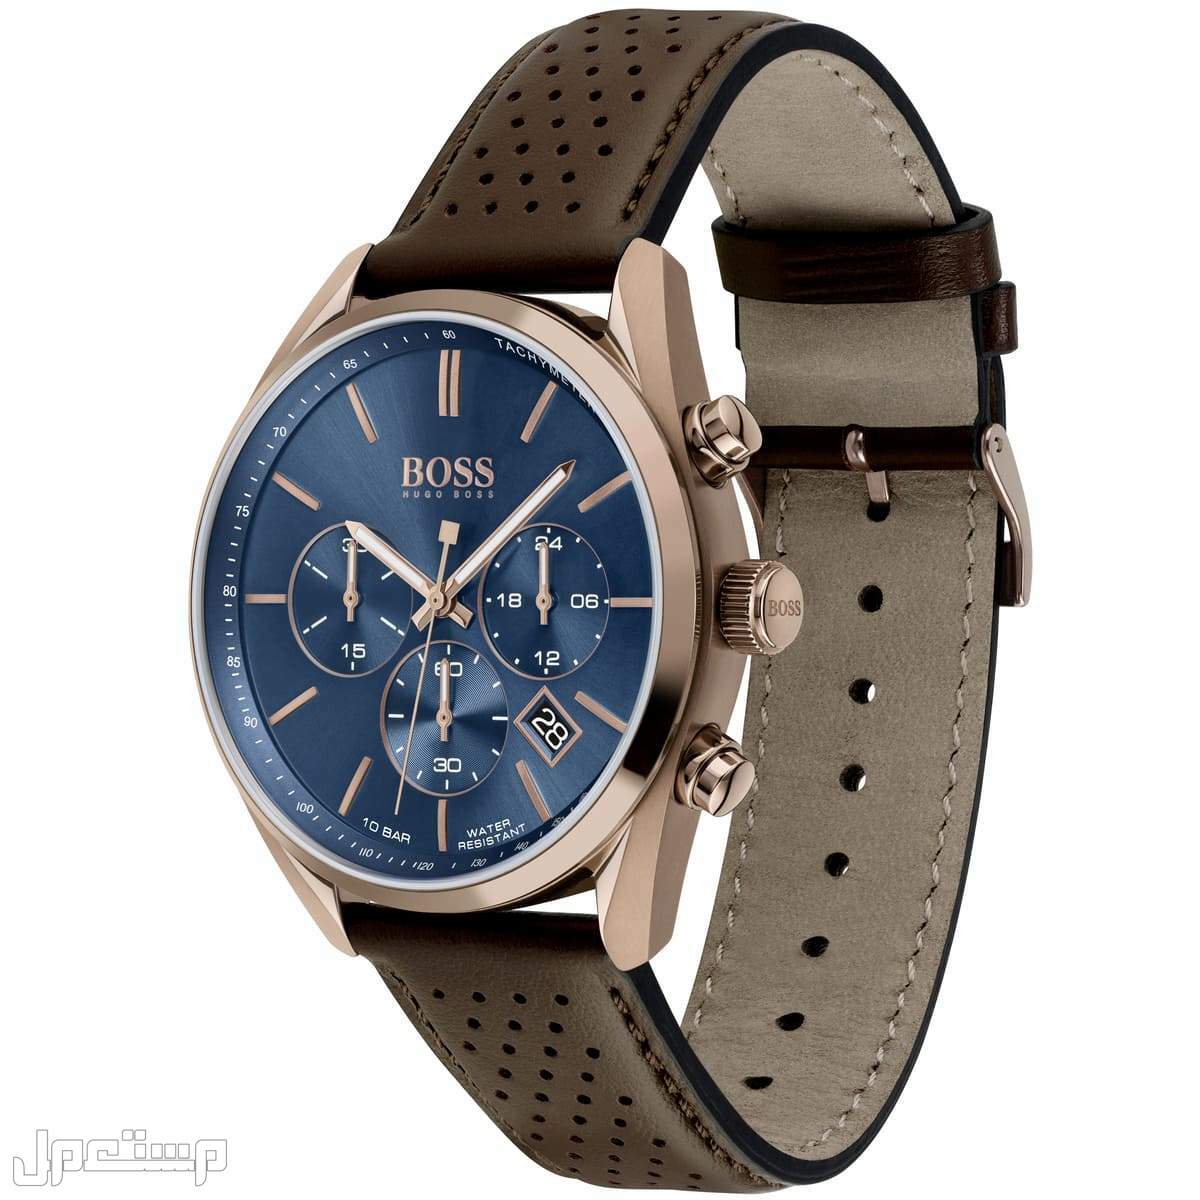 أفضل ساعات بوس Boss الأكثر مبيعا هذا العام وأسعارها في الكويت ساع 1513817-hugo-boss-watch-men-blue-dial-leather-brown-strap-quartz-analog-chro